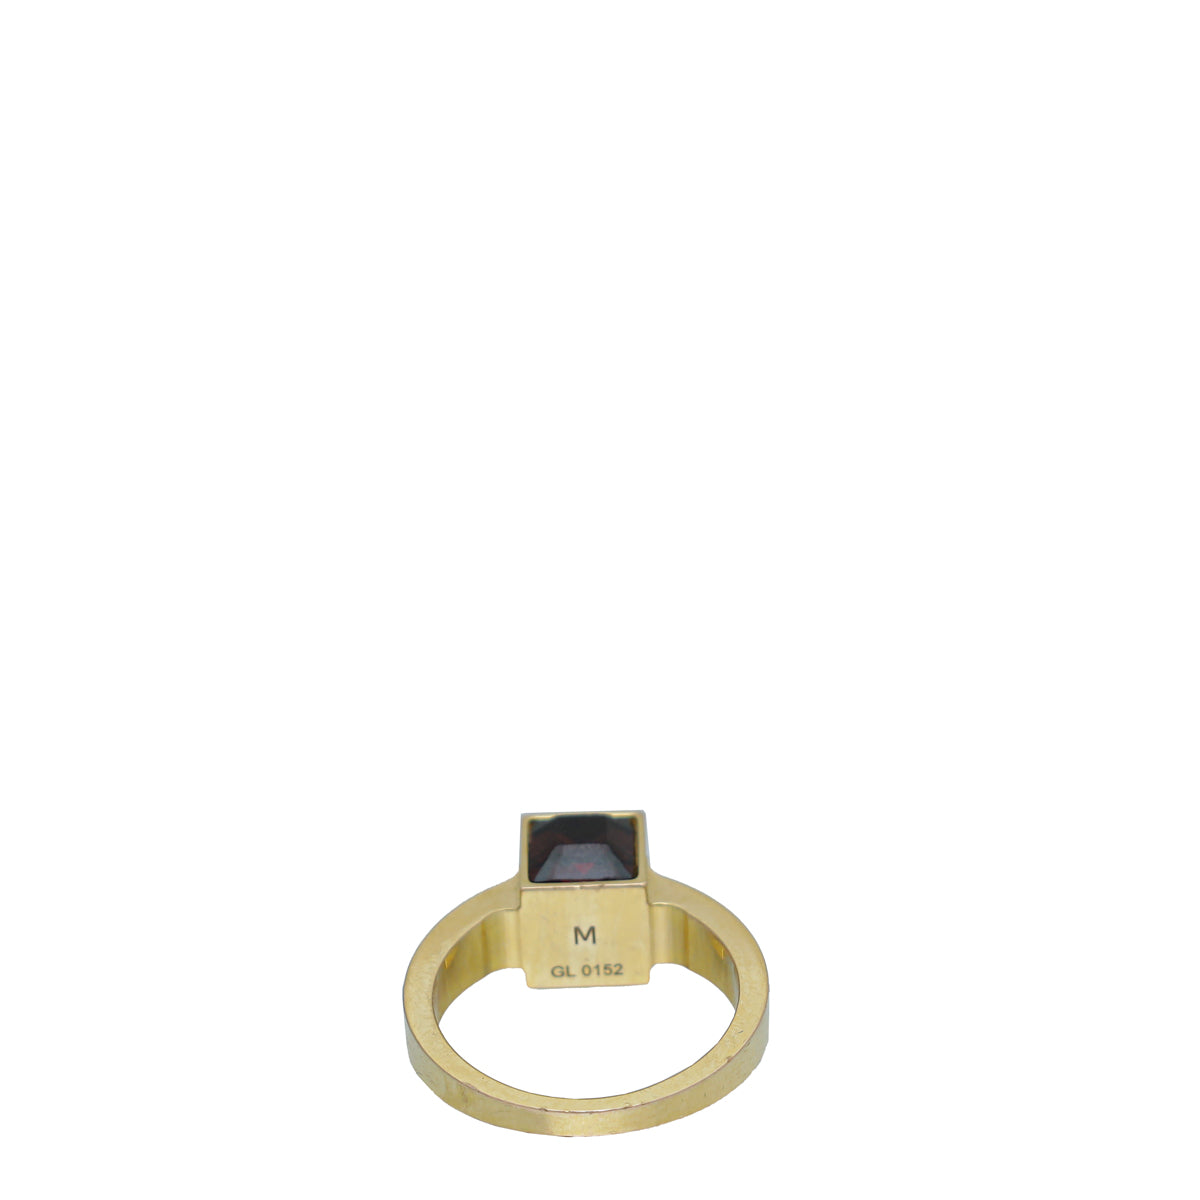 Louis Vuitton Gamble Crystal Gold Tone Ring M